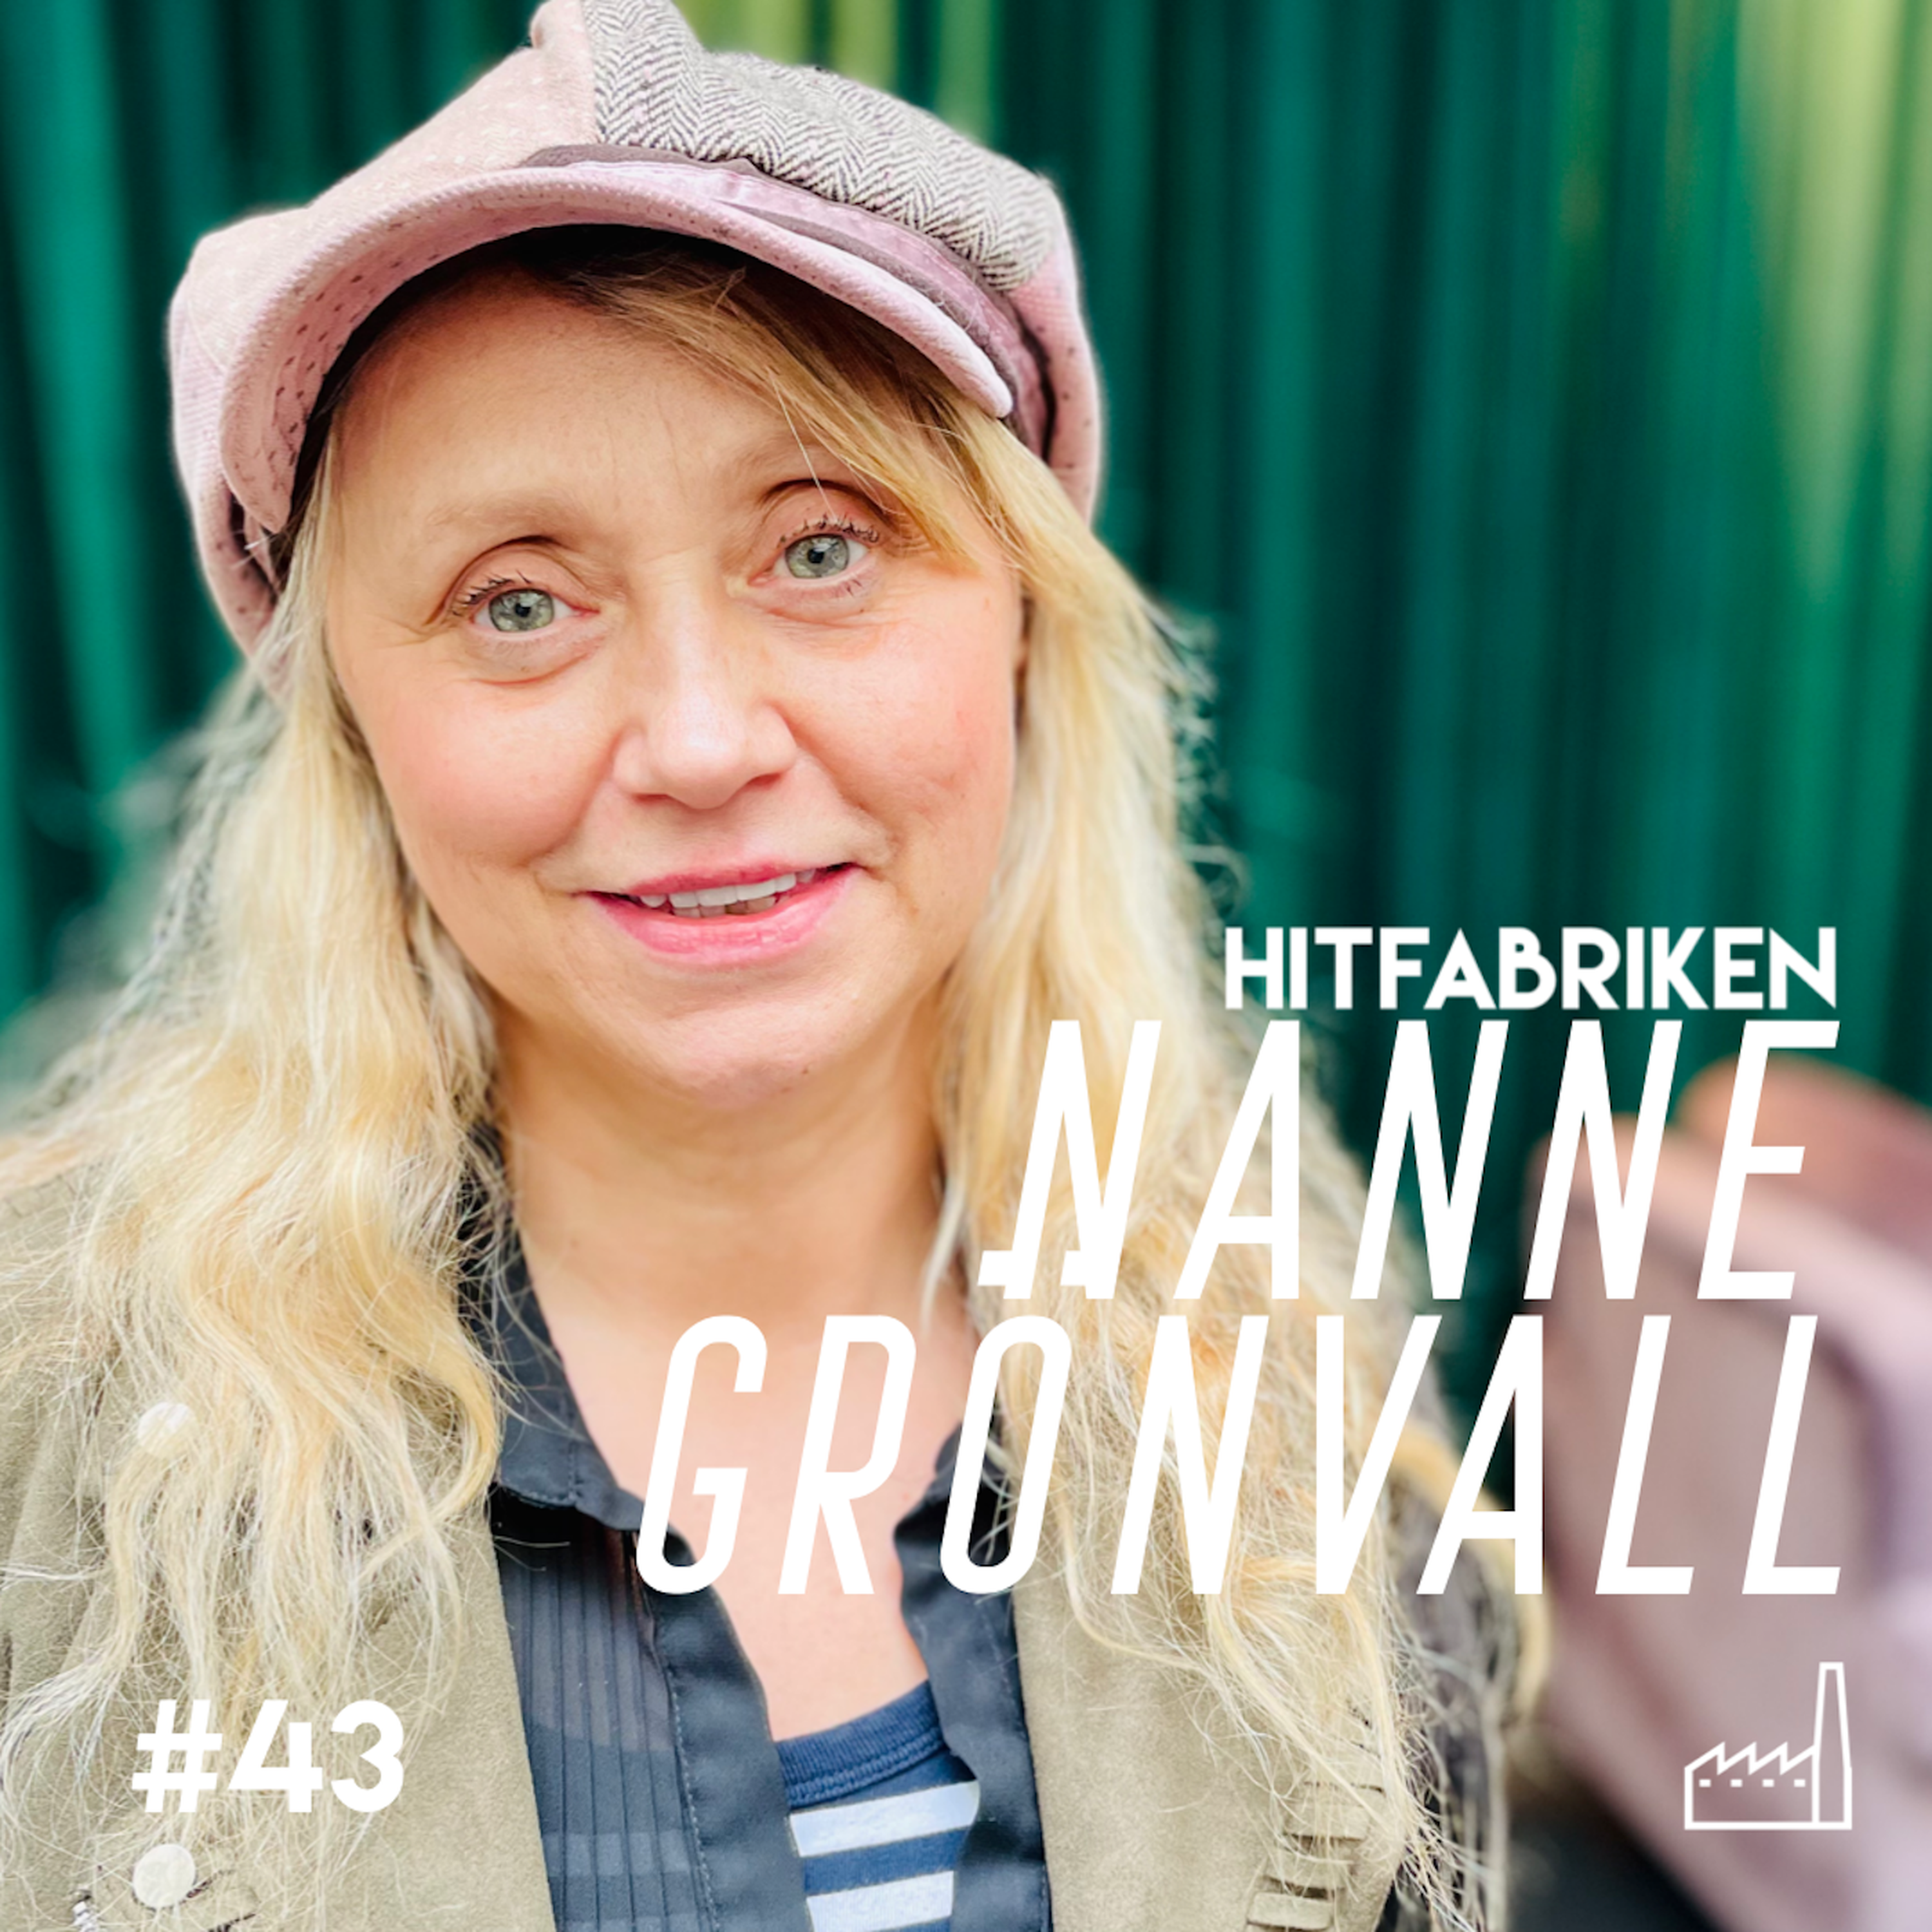 43. Nanne Grönvall